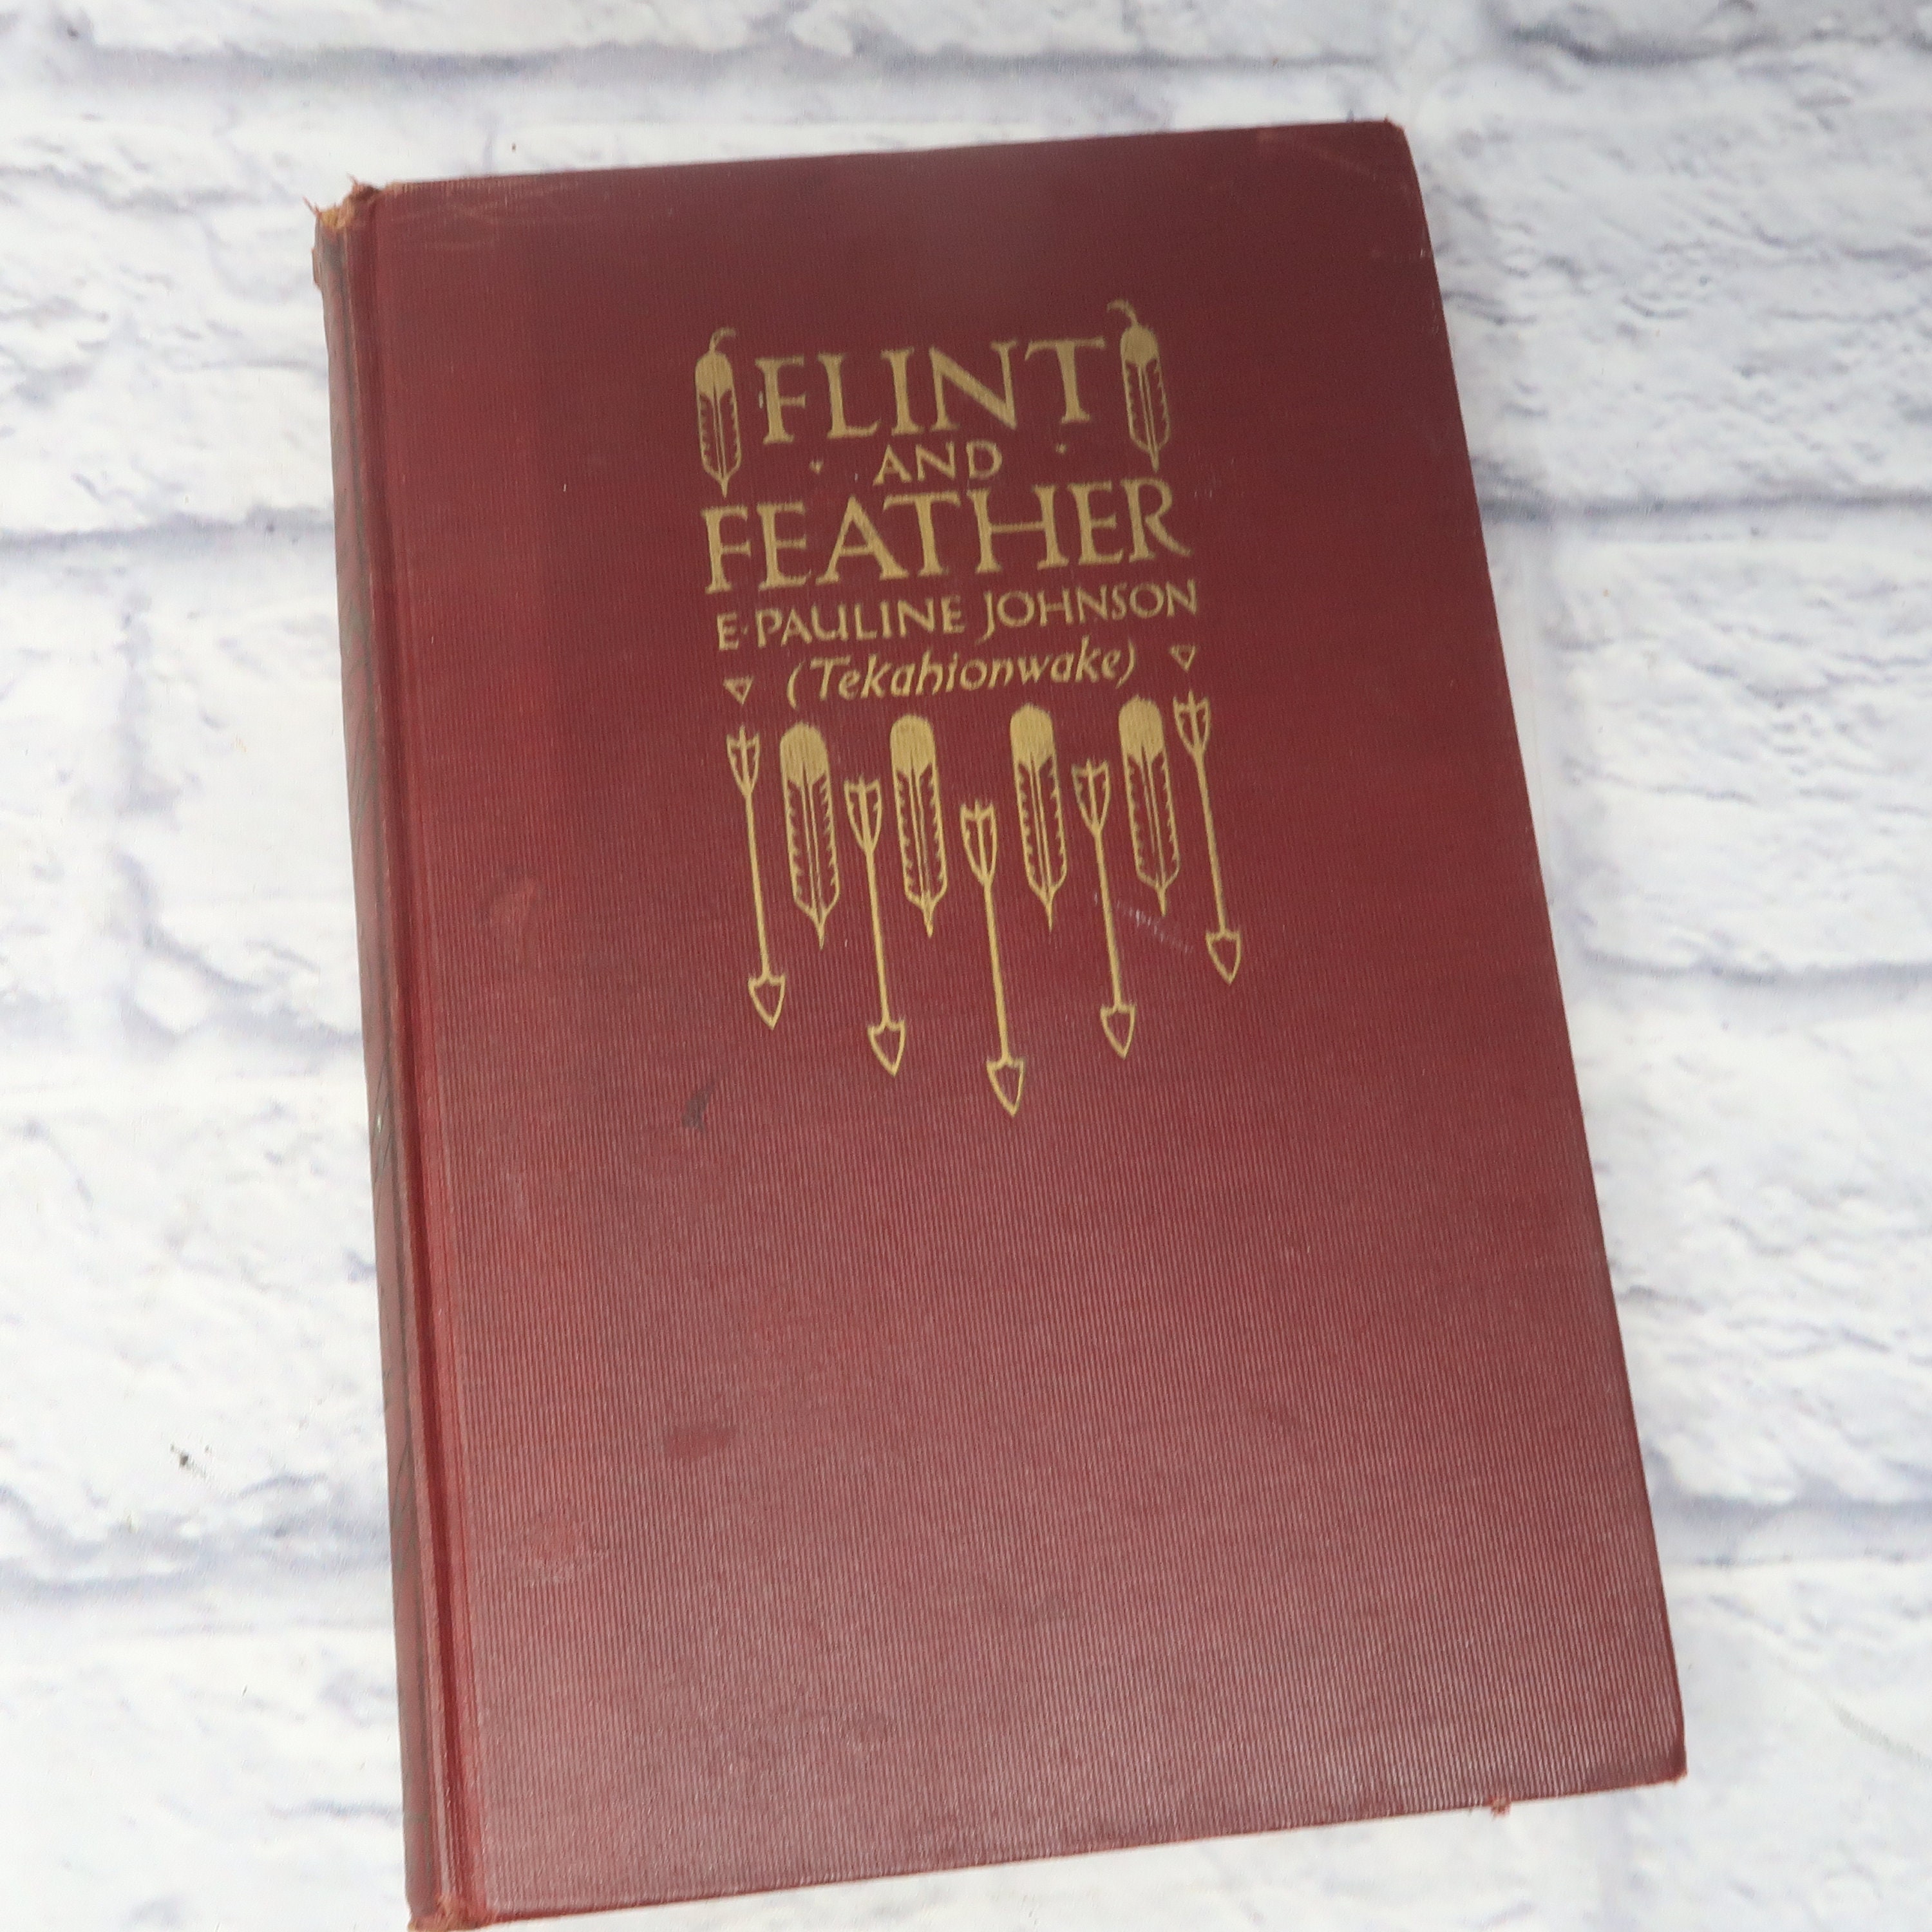 Flint [Book]